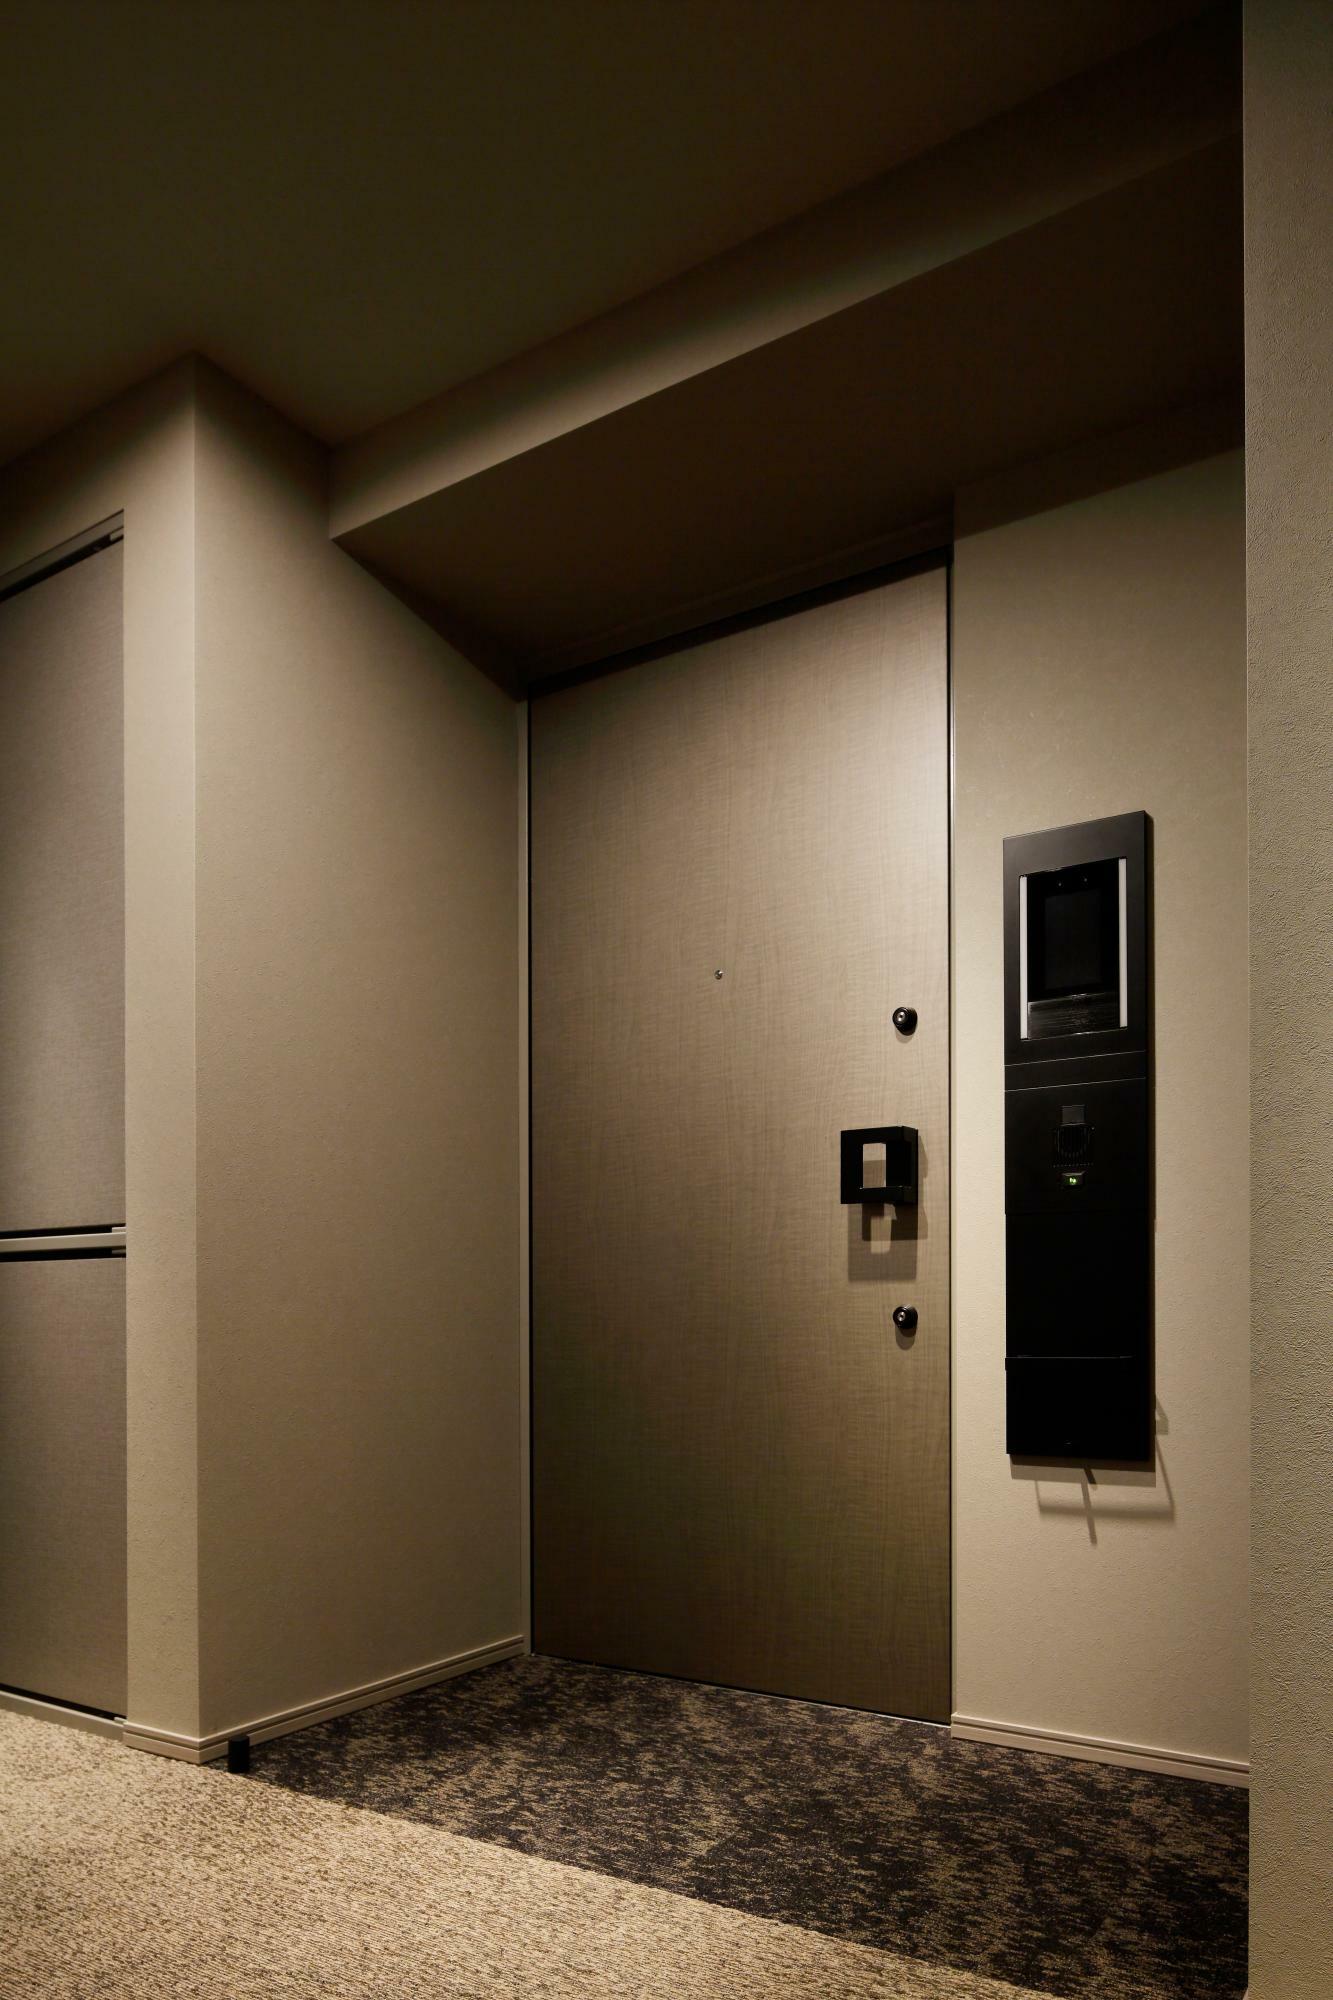 高級ホテルさながらの完全内廊下という落ち着いた空間。玄関扉の右に見えるのが顔認証システム